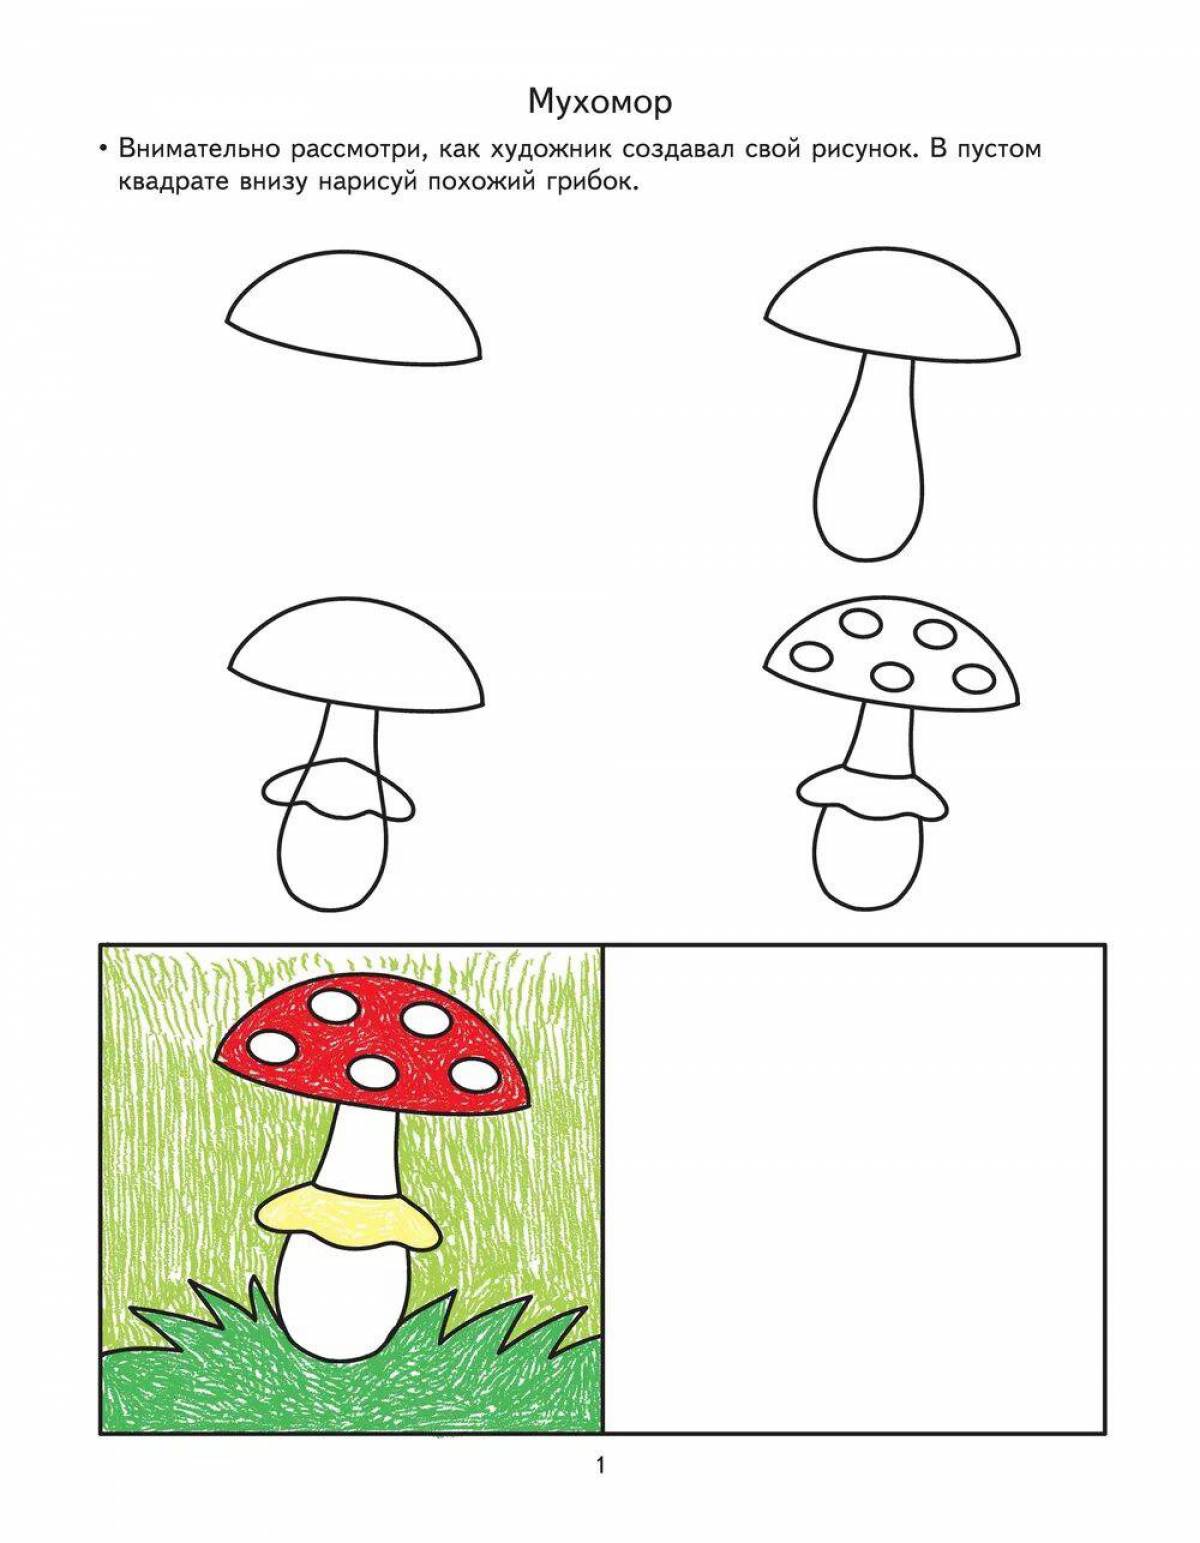 Нарисовать рисунок для 6 лет. Нарисовать грибы съедобные пошагово для детей. Поэтапное рисование для малышей. Рисование пошагово для детей 7 лет. Схемы для рисования для детей 6-7 лет.